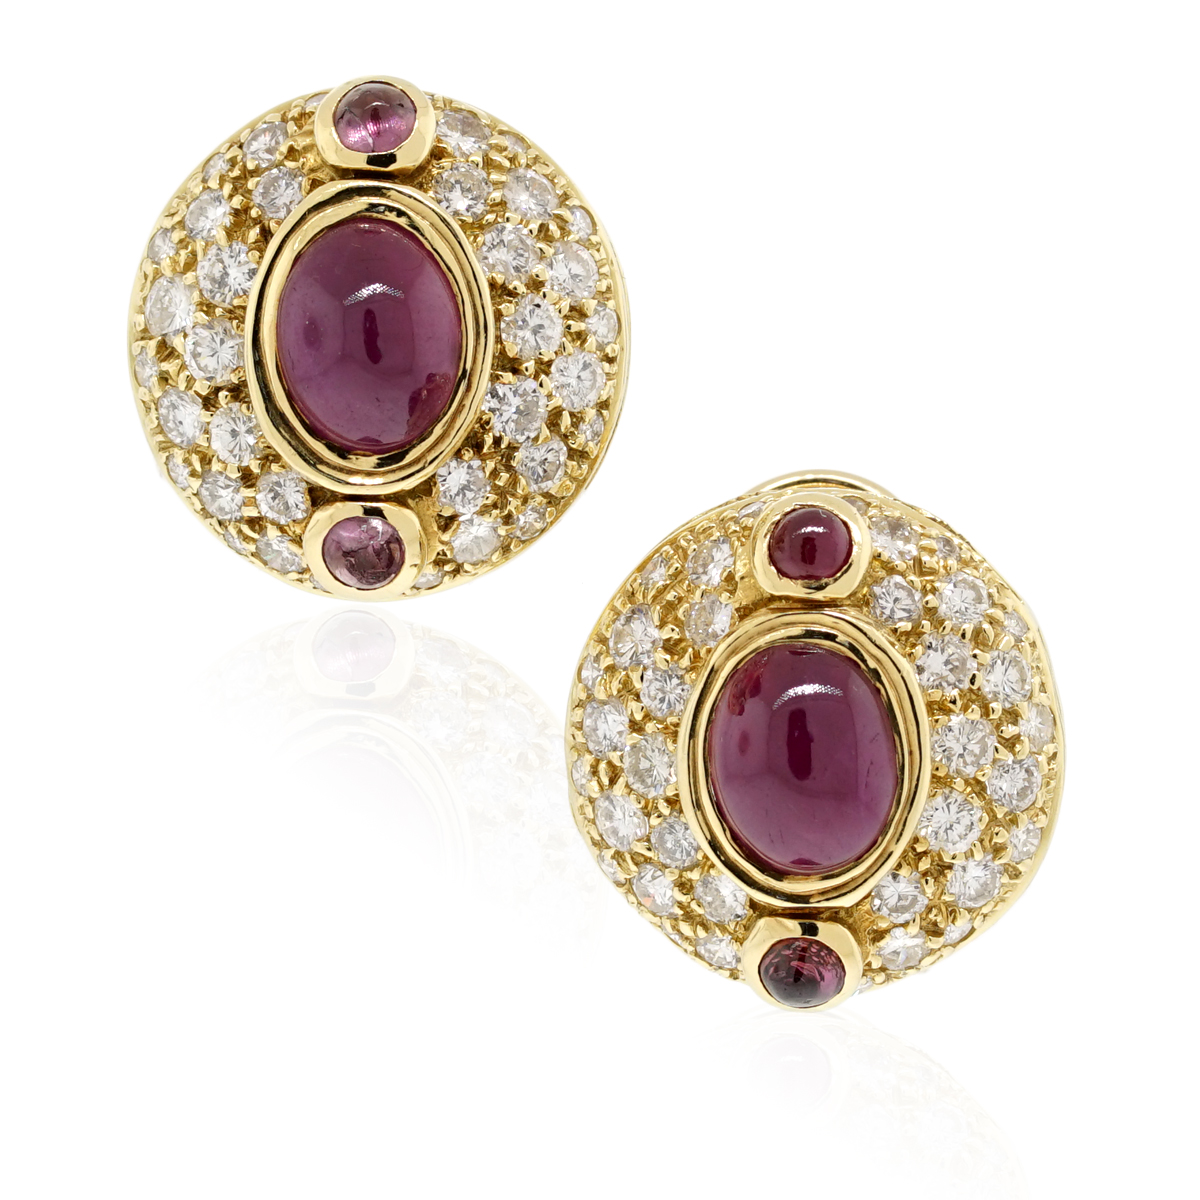 Louis Vuitton 18K Gold Diamond Earrings - Ruby Lane